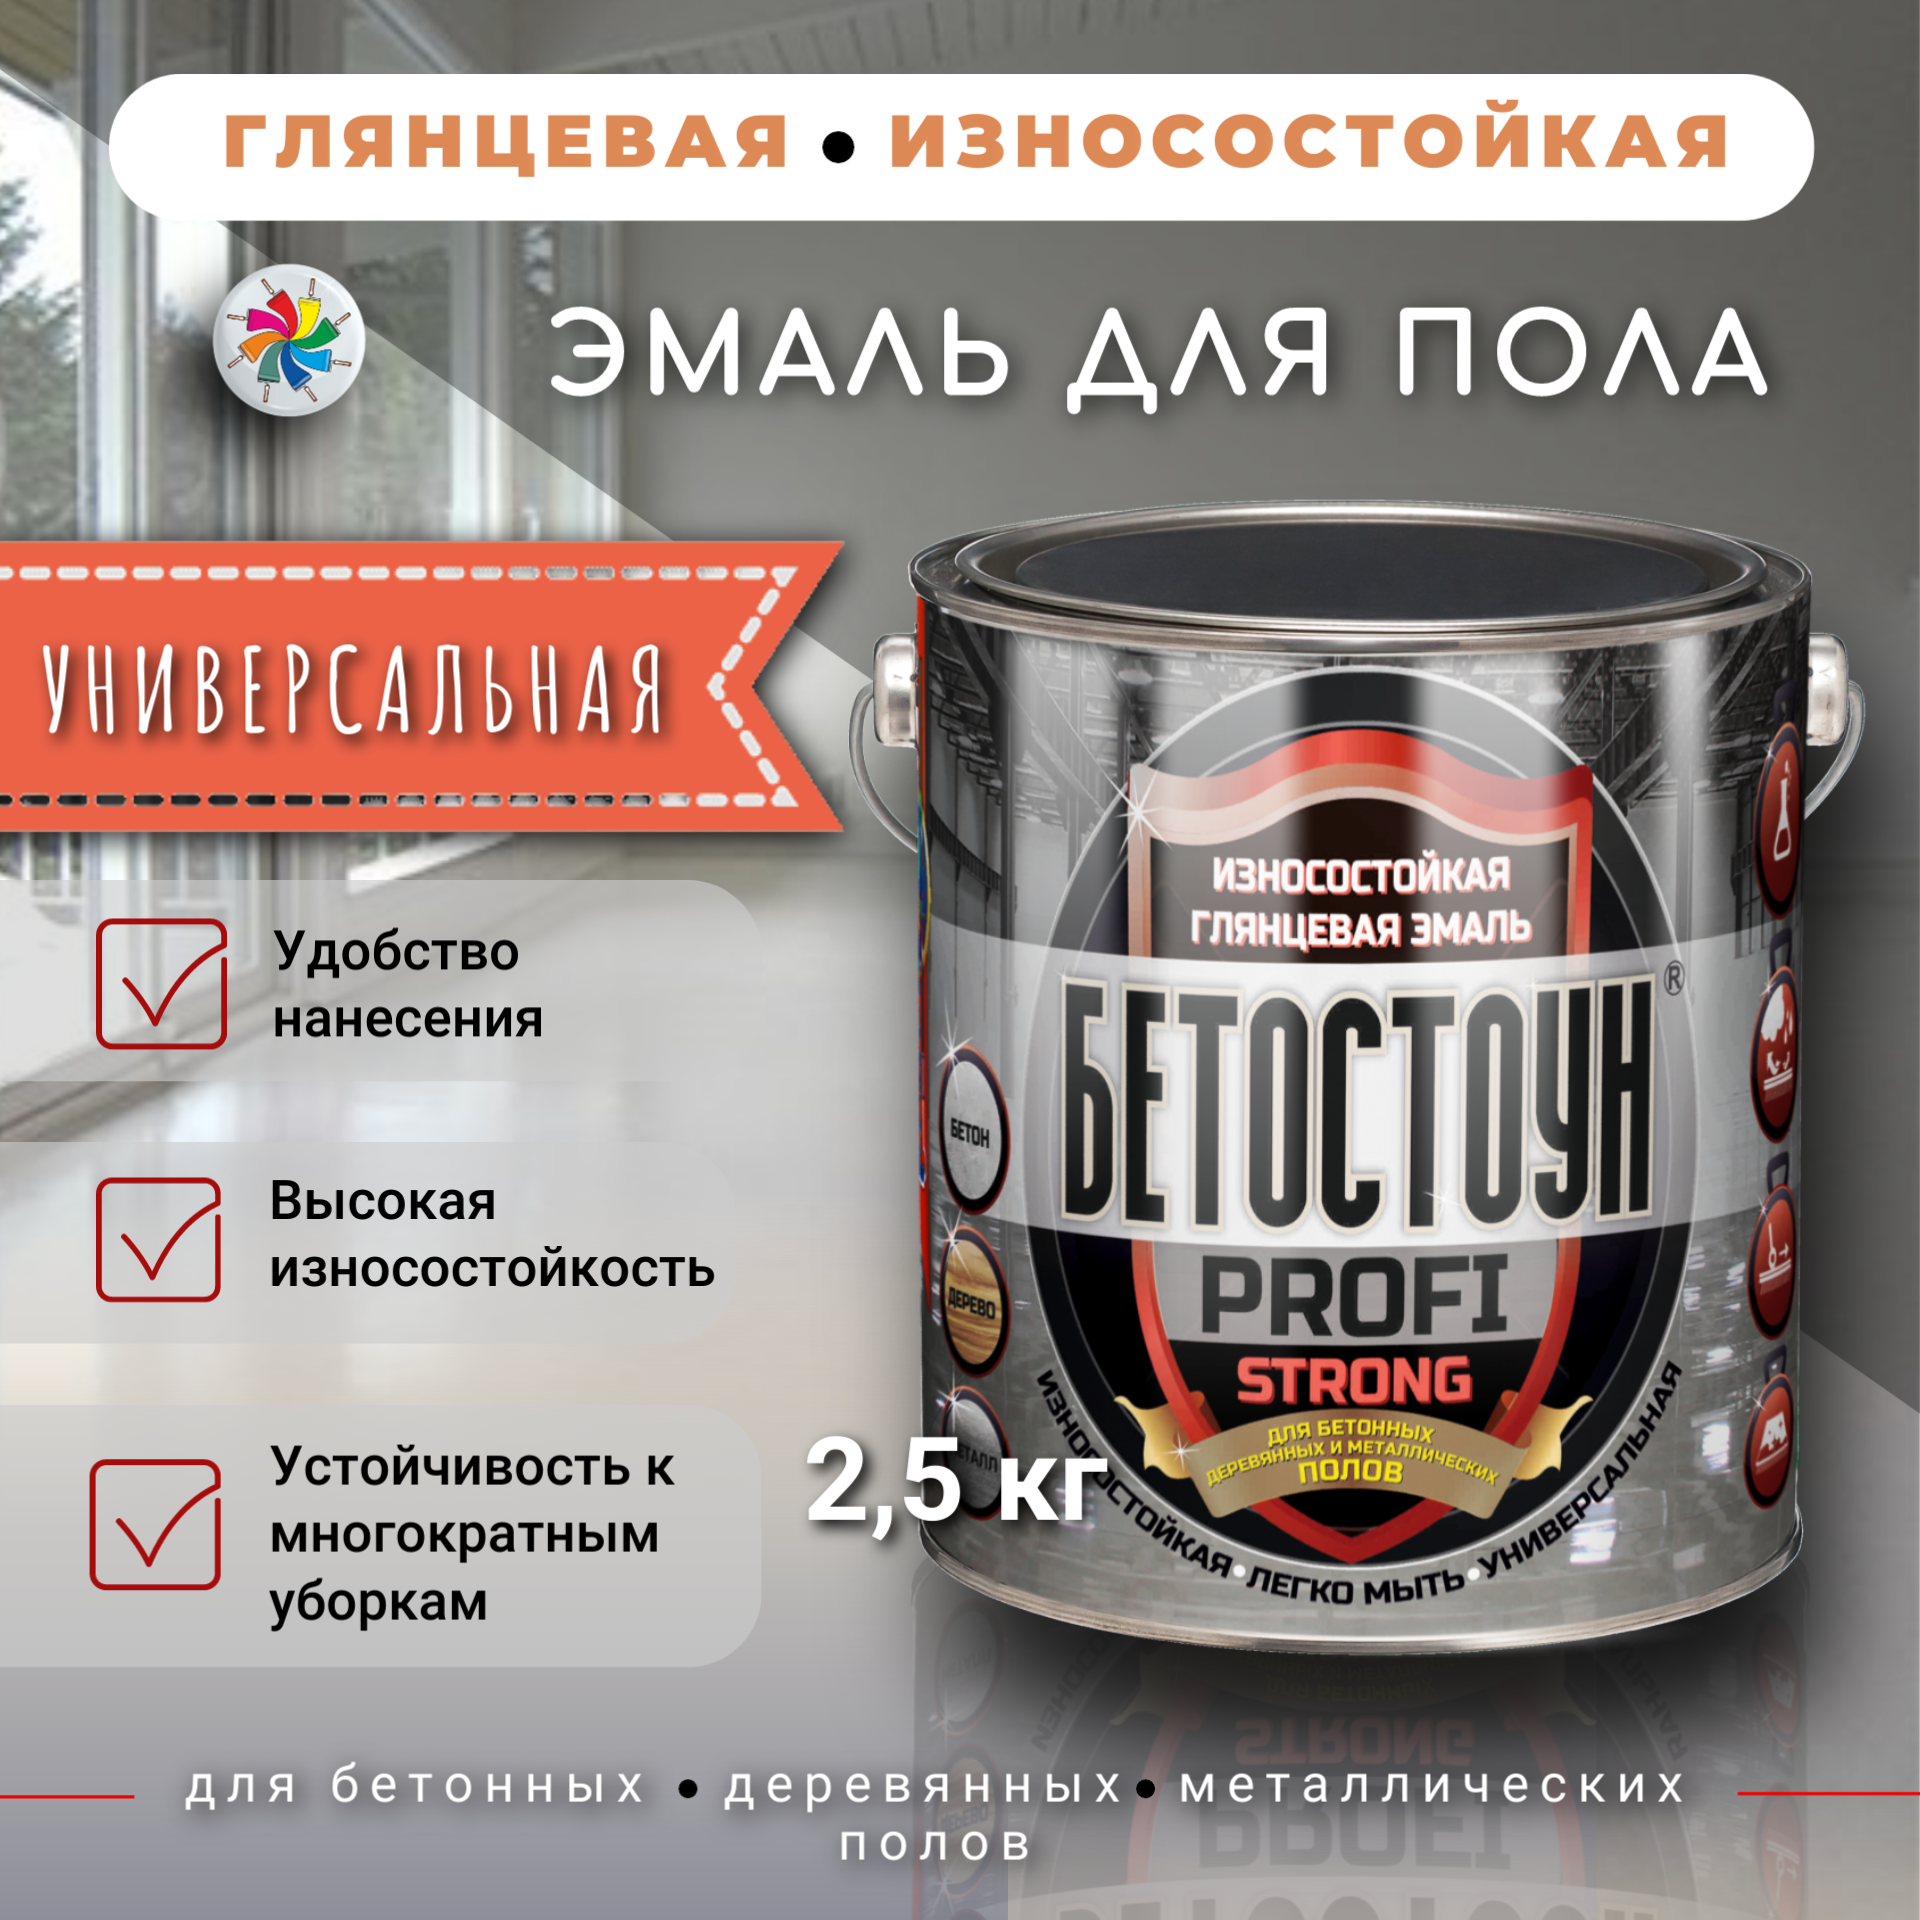 Эмаль для бетонных, деревянных и металлических полов, Бетостоун PROFI STRONG, серая, 2,5кг швабра для мытья полов россия